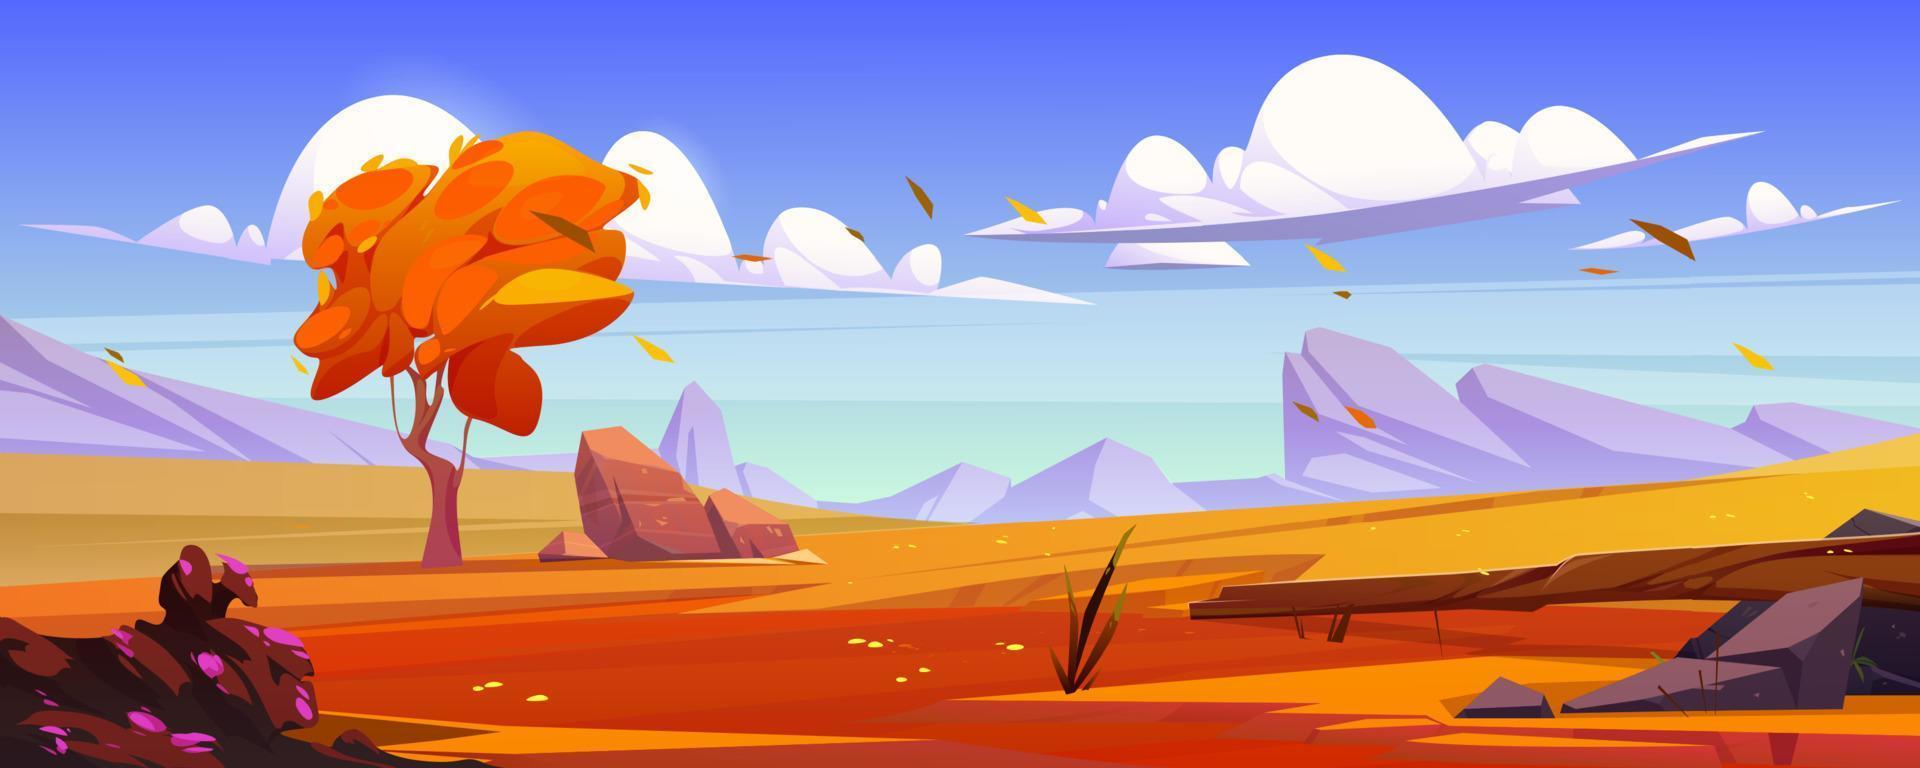 paisagem de outono dos desenhos animados, cena do vale da montanha vetor